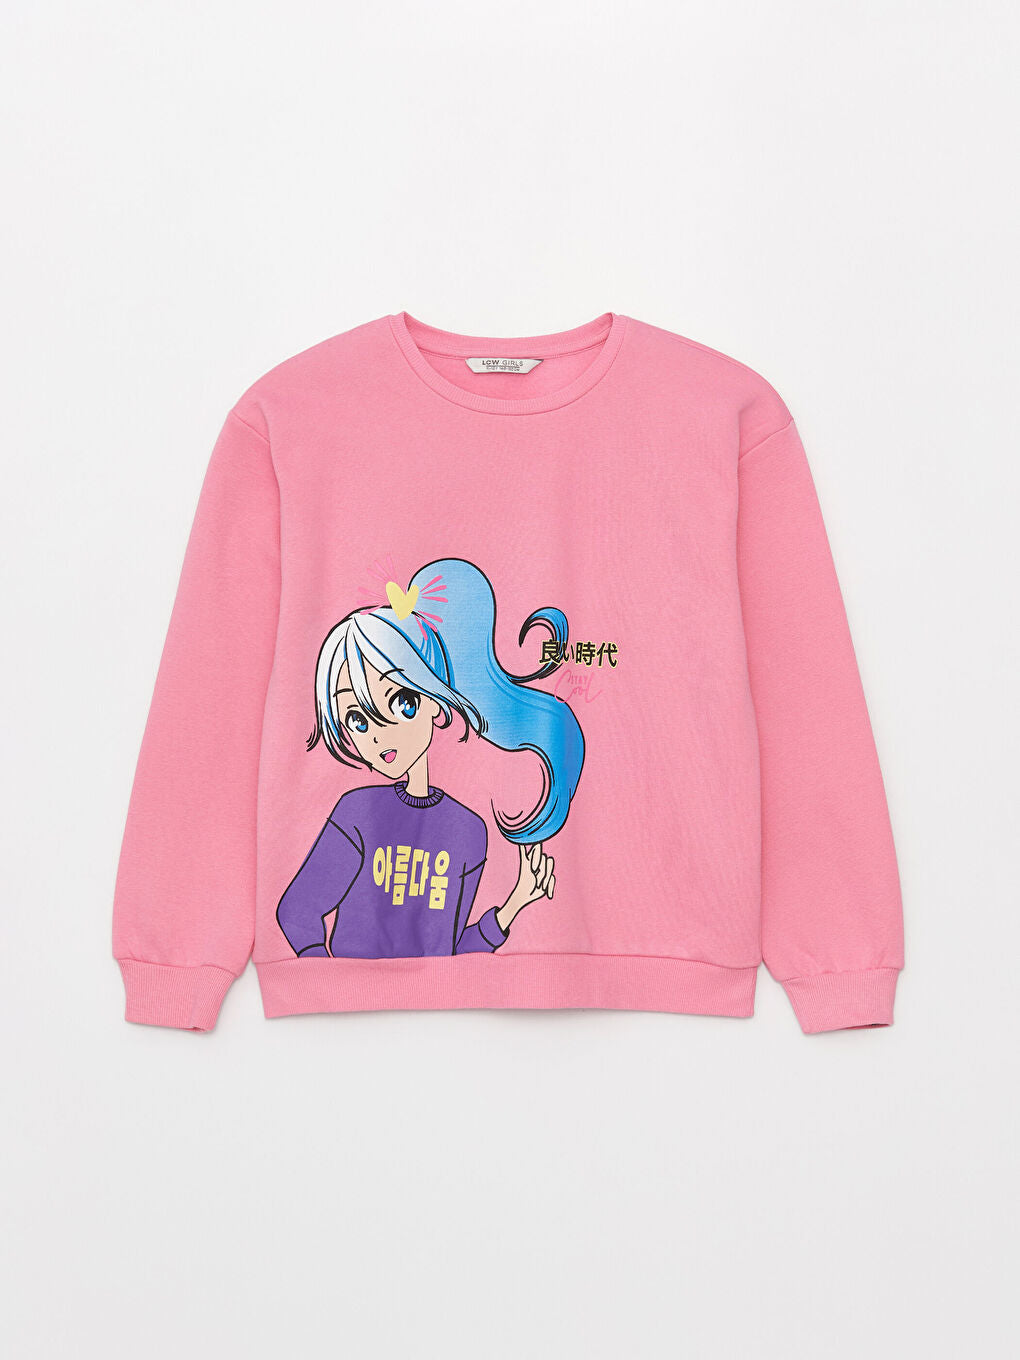 Crew Neck Printed Long Sleeve Girls Sweatshirt Anime